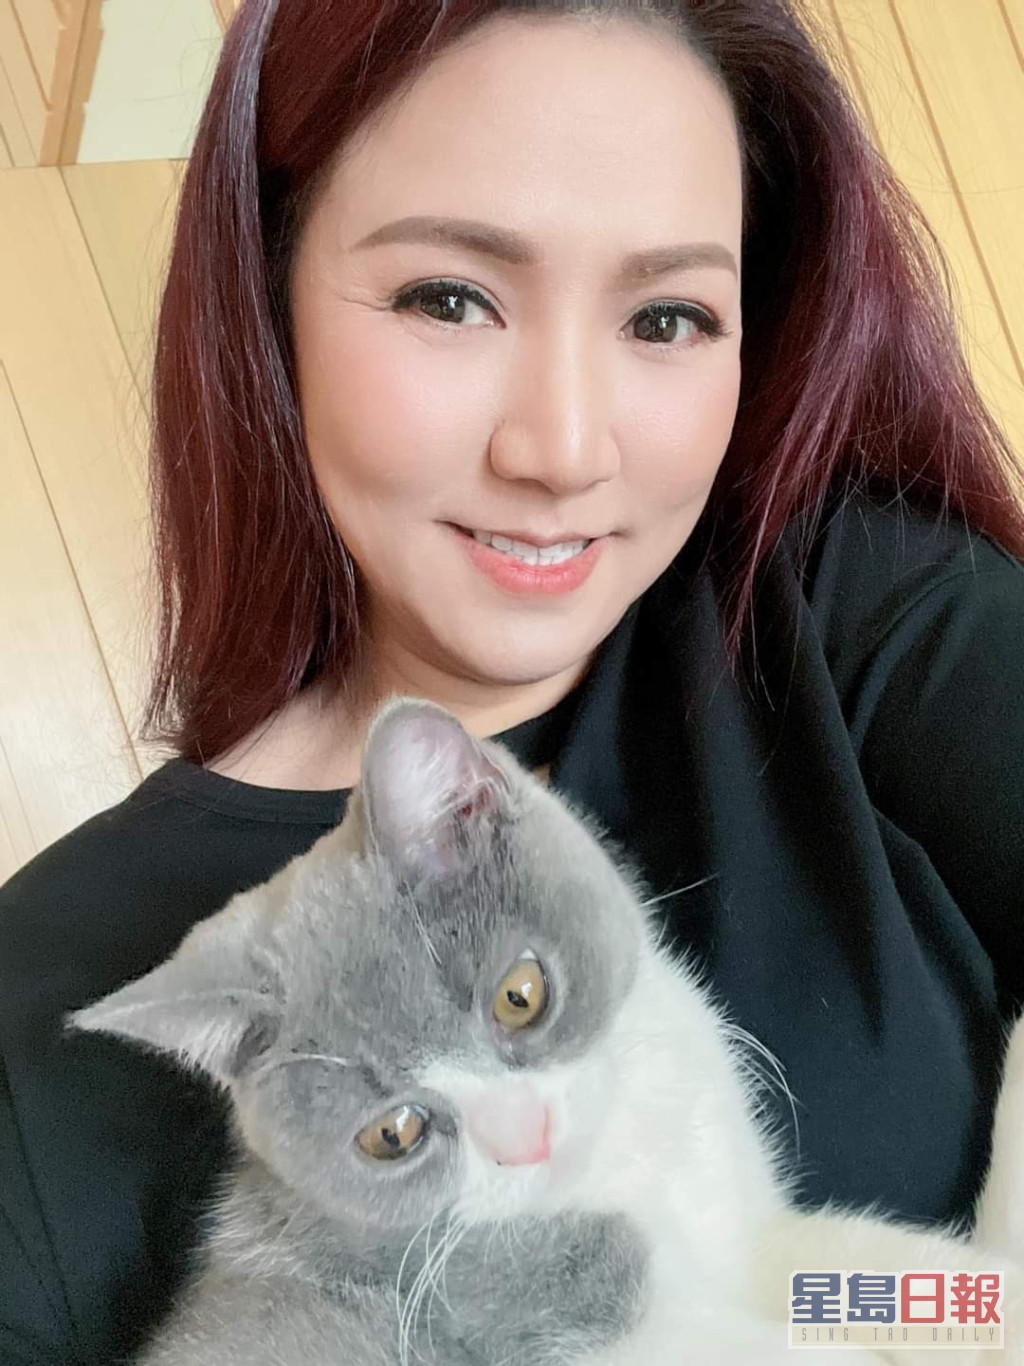 小恩子近年更开心养猫。